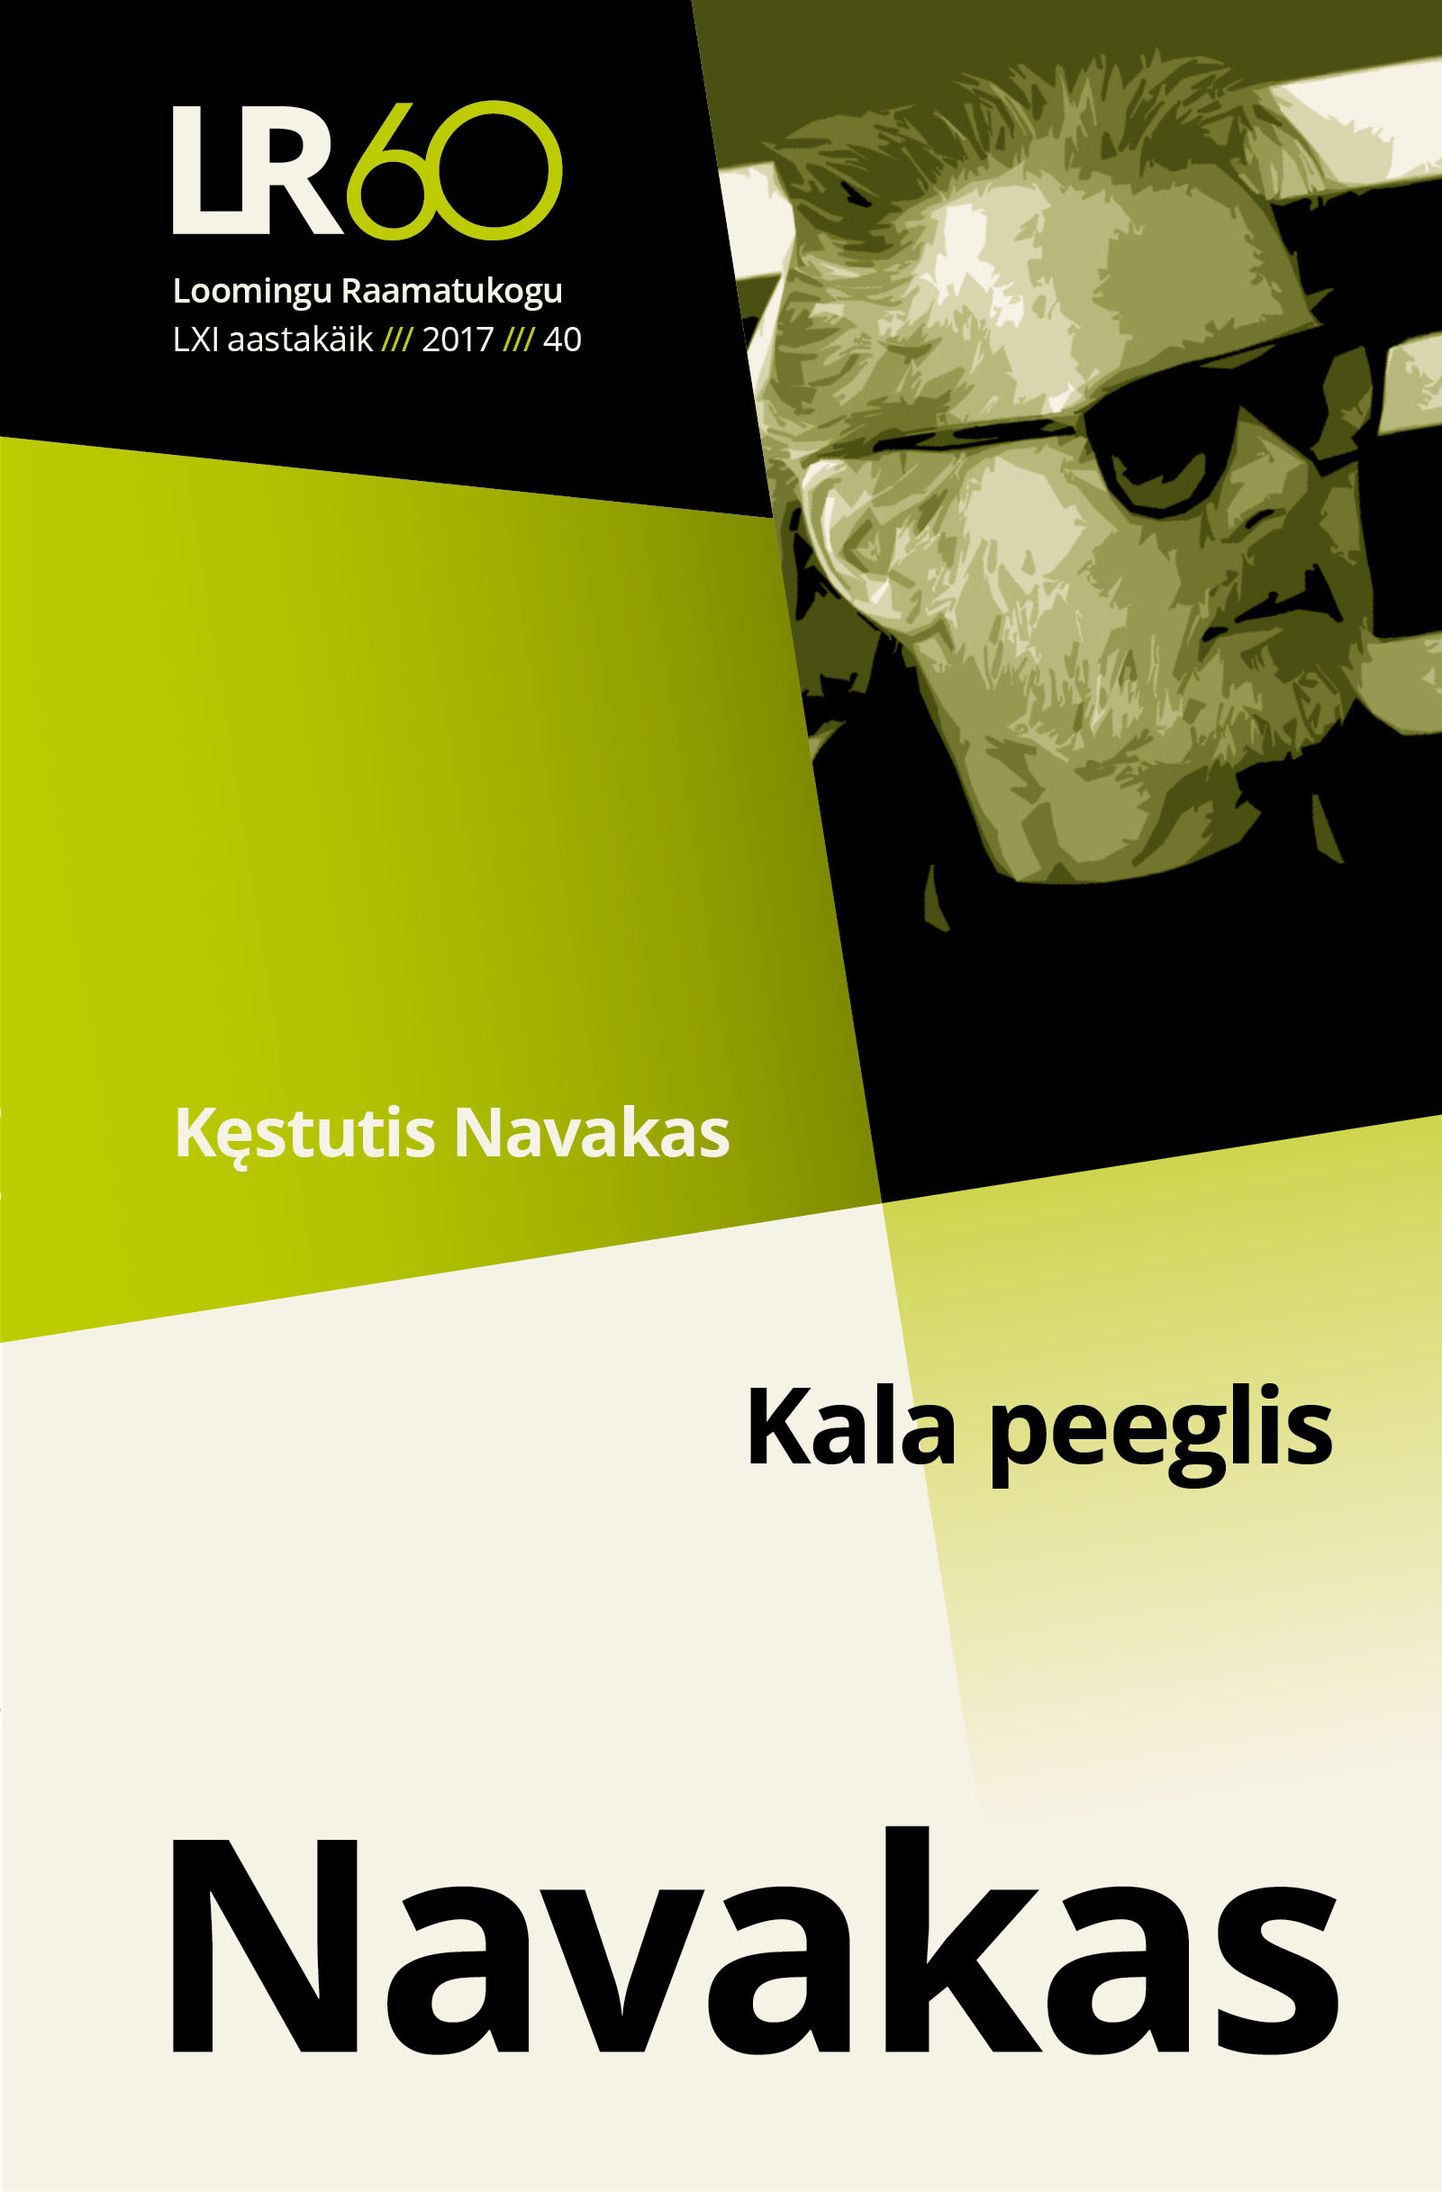 Kȩstutis Navakas on üks Leedu tänapäeva tunnustatumaid luuletajaid.